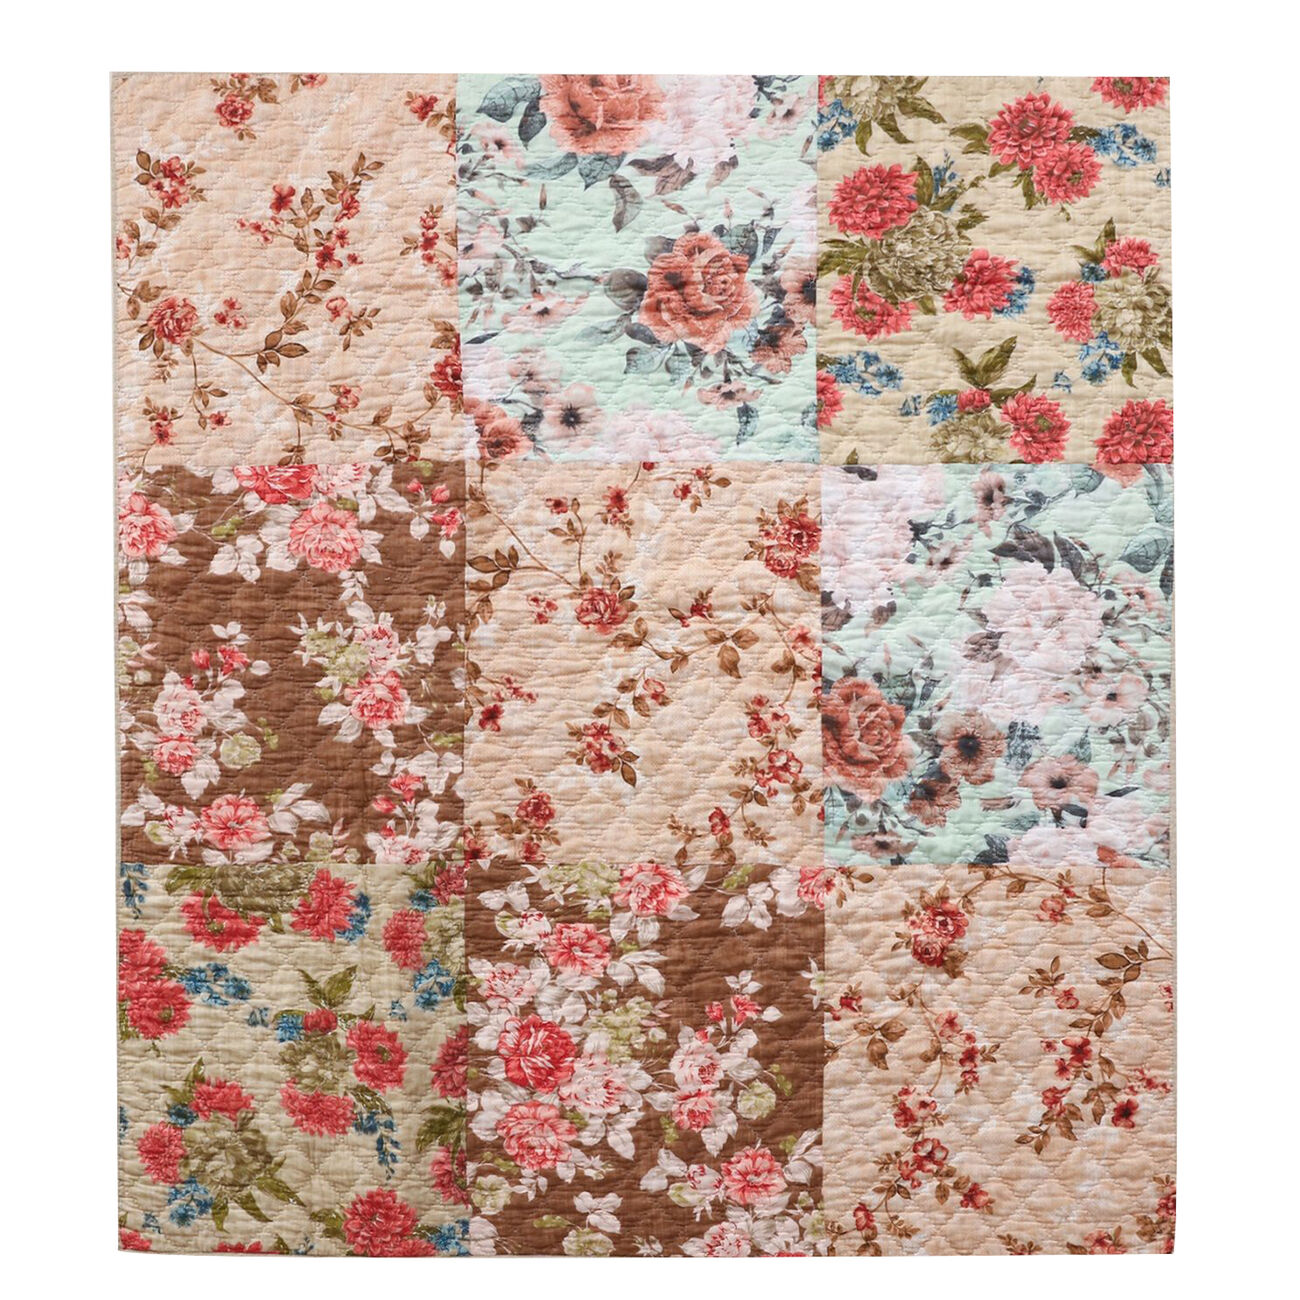 Munich Machine Quilted Floral Print Fabric Throw Blanket, Beige